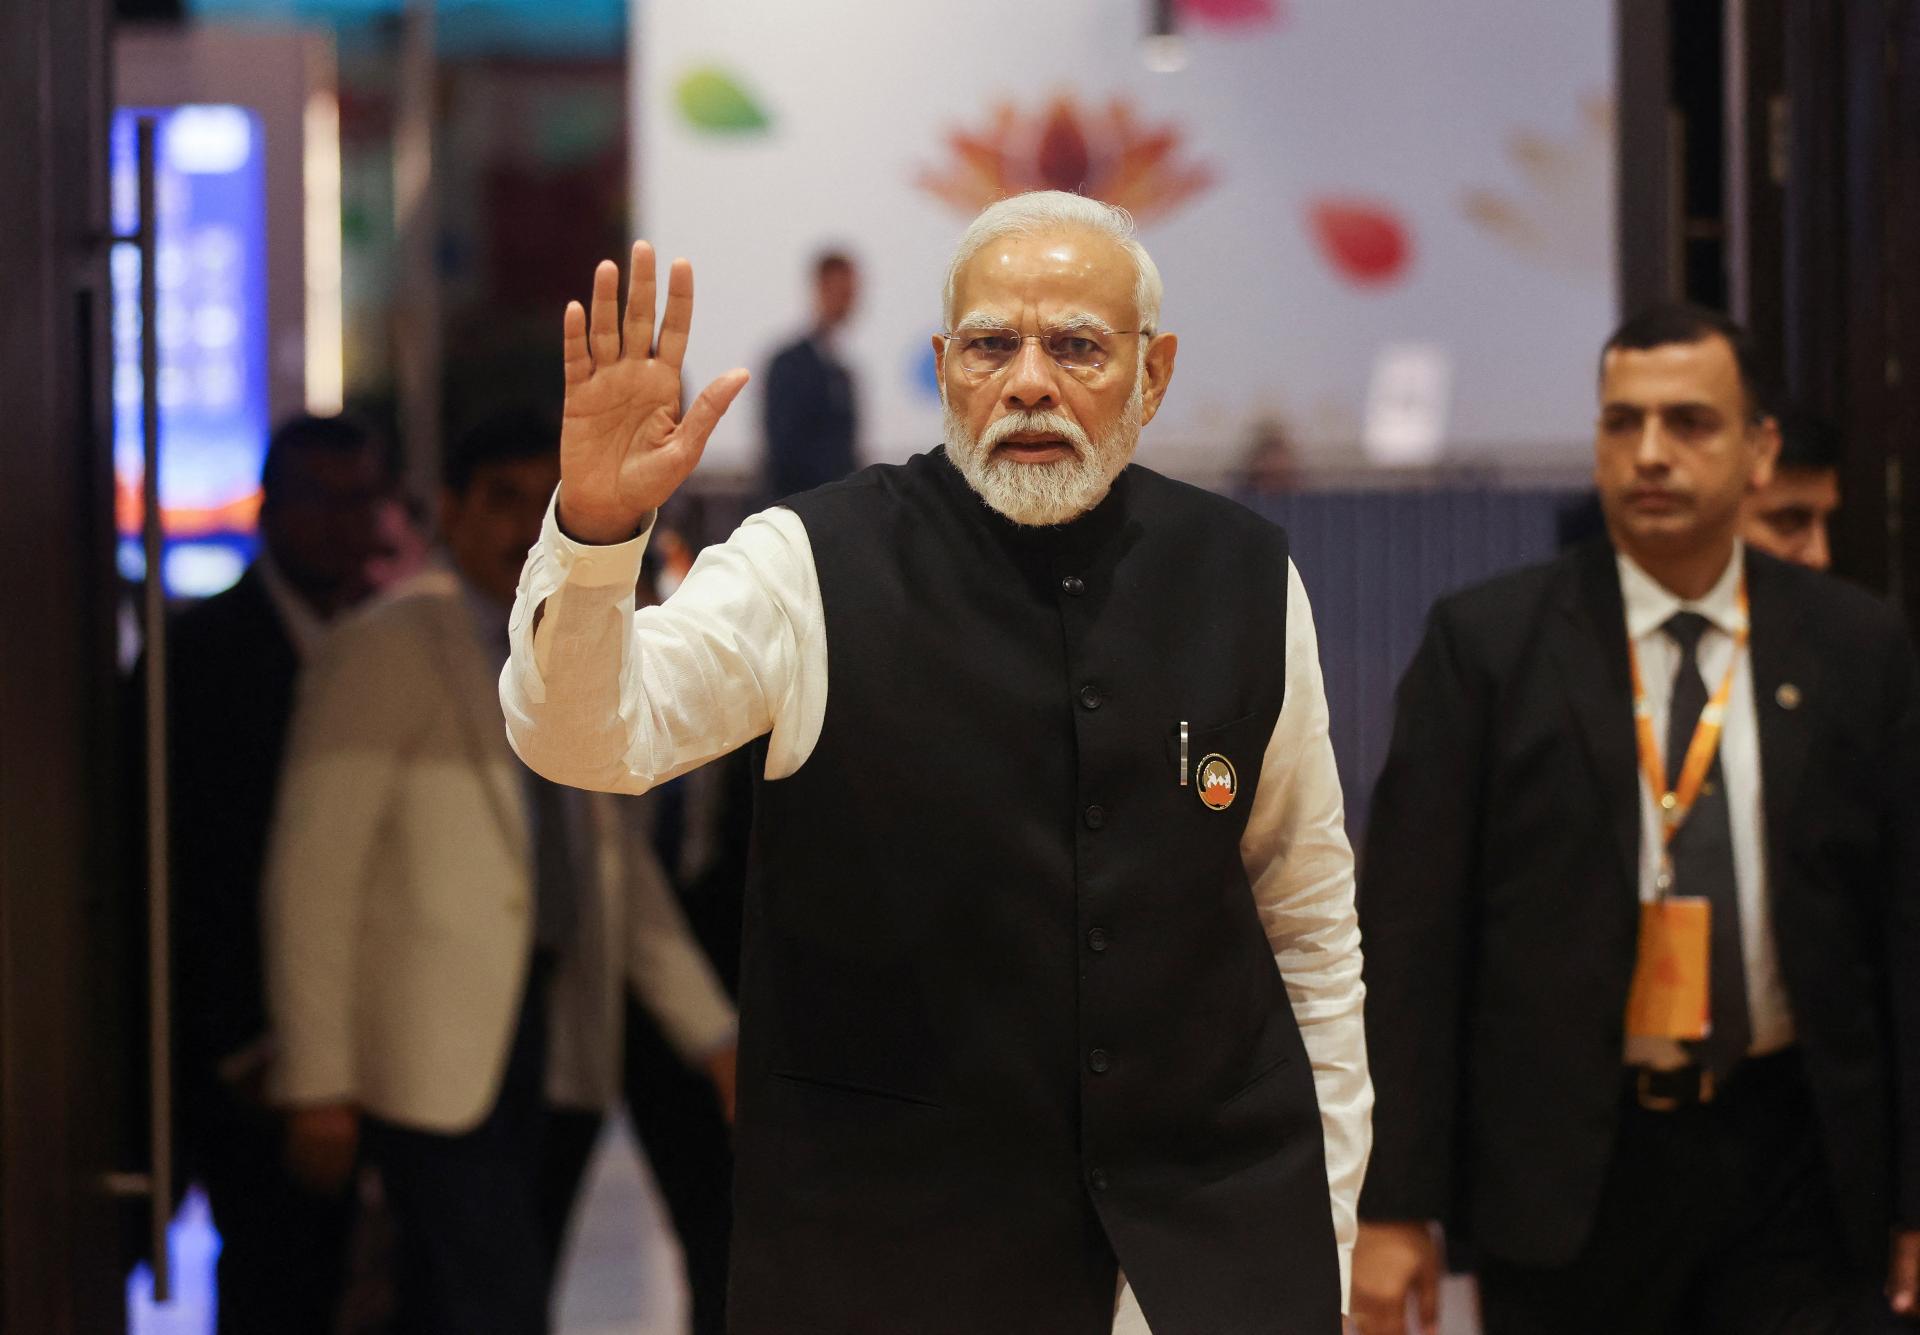 Modi a salué le partenariat stratégique entre l’Inde et l’Arabie saoudite